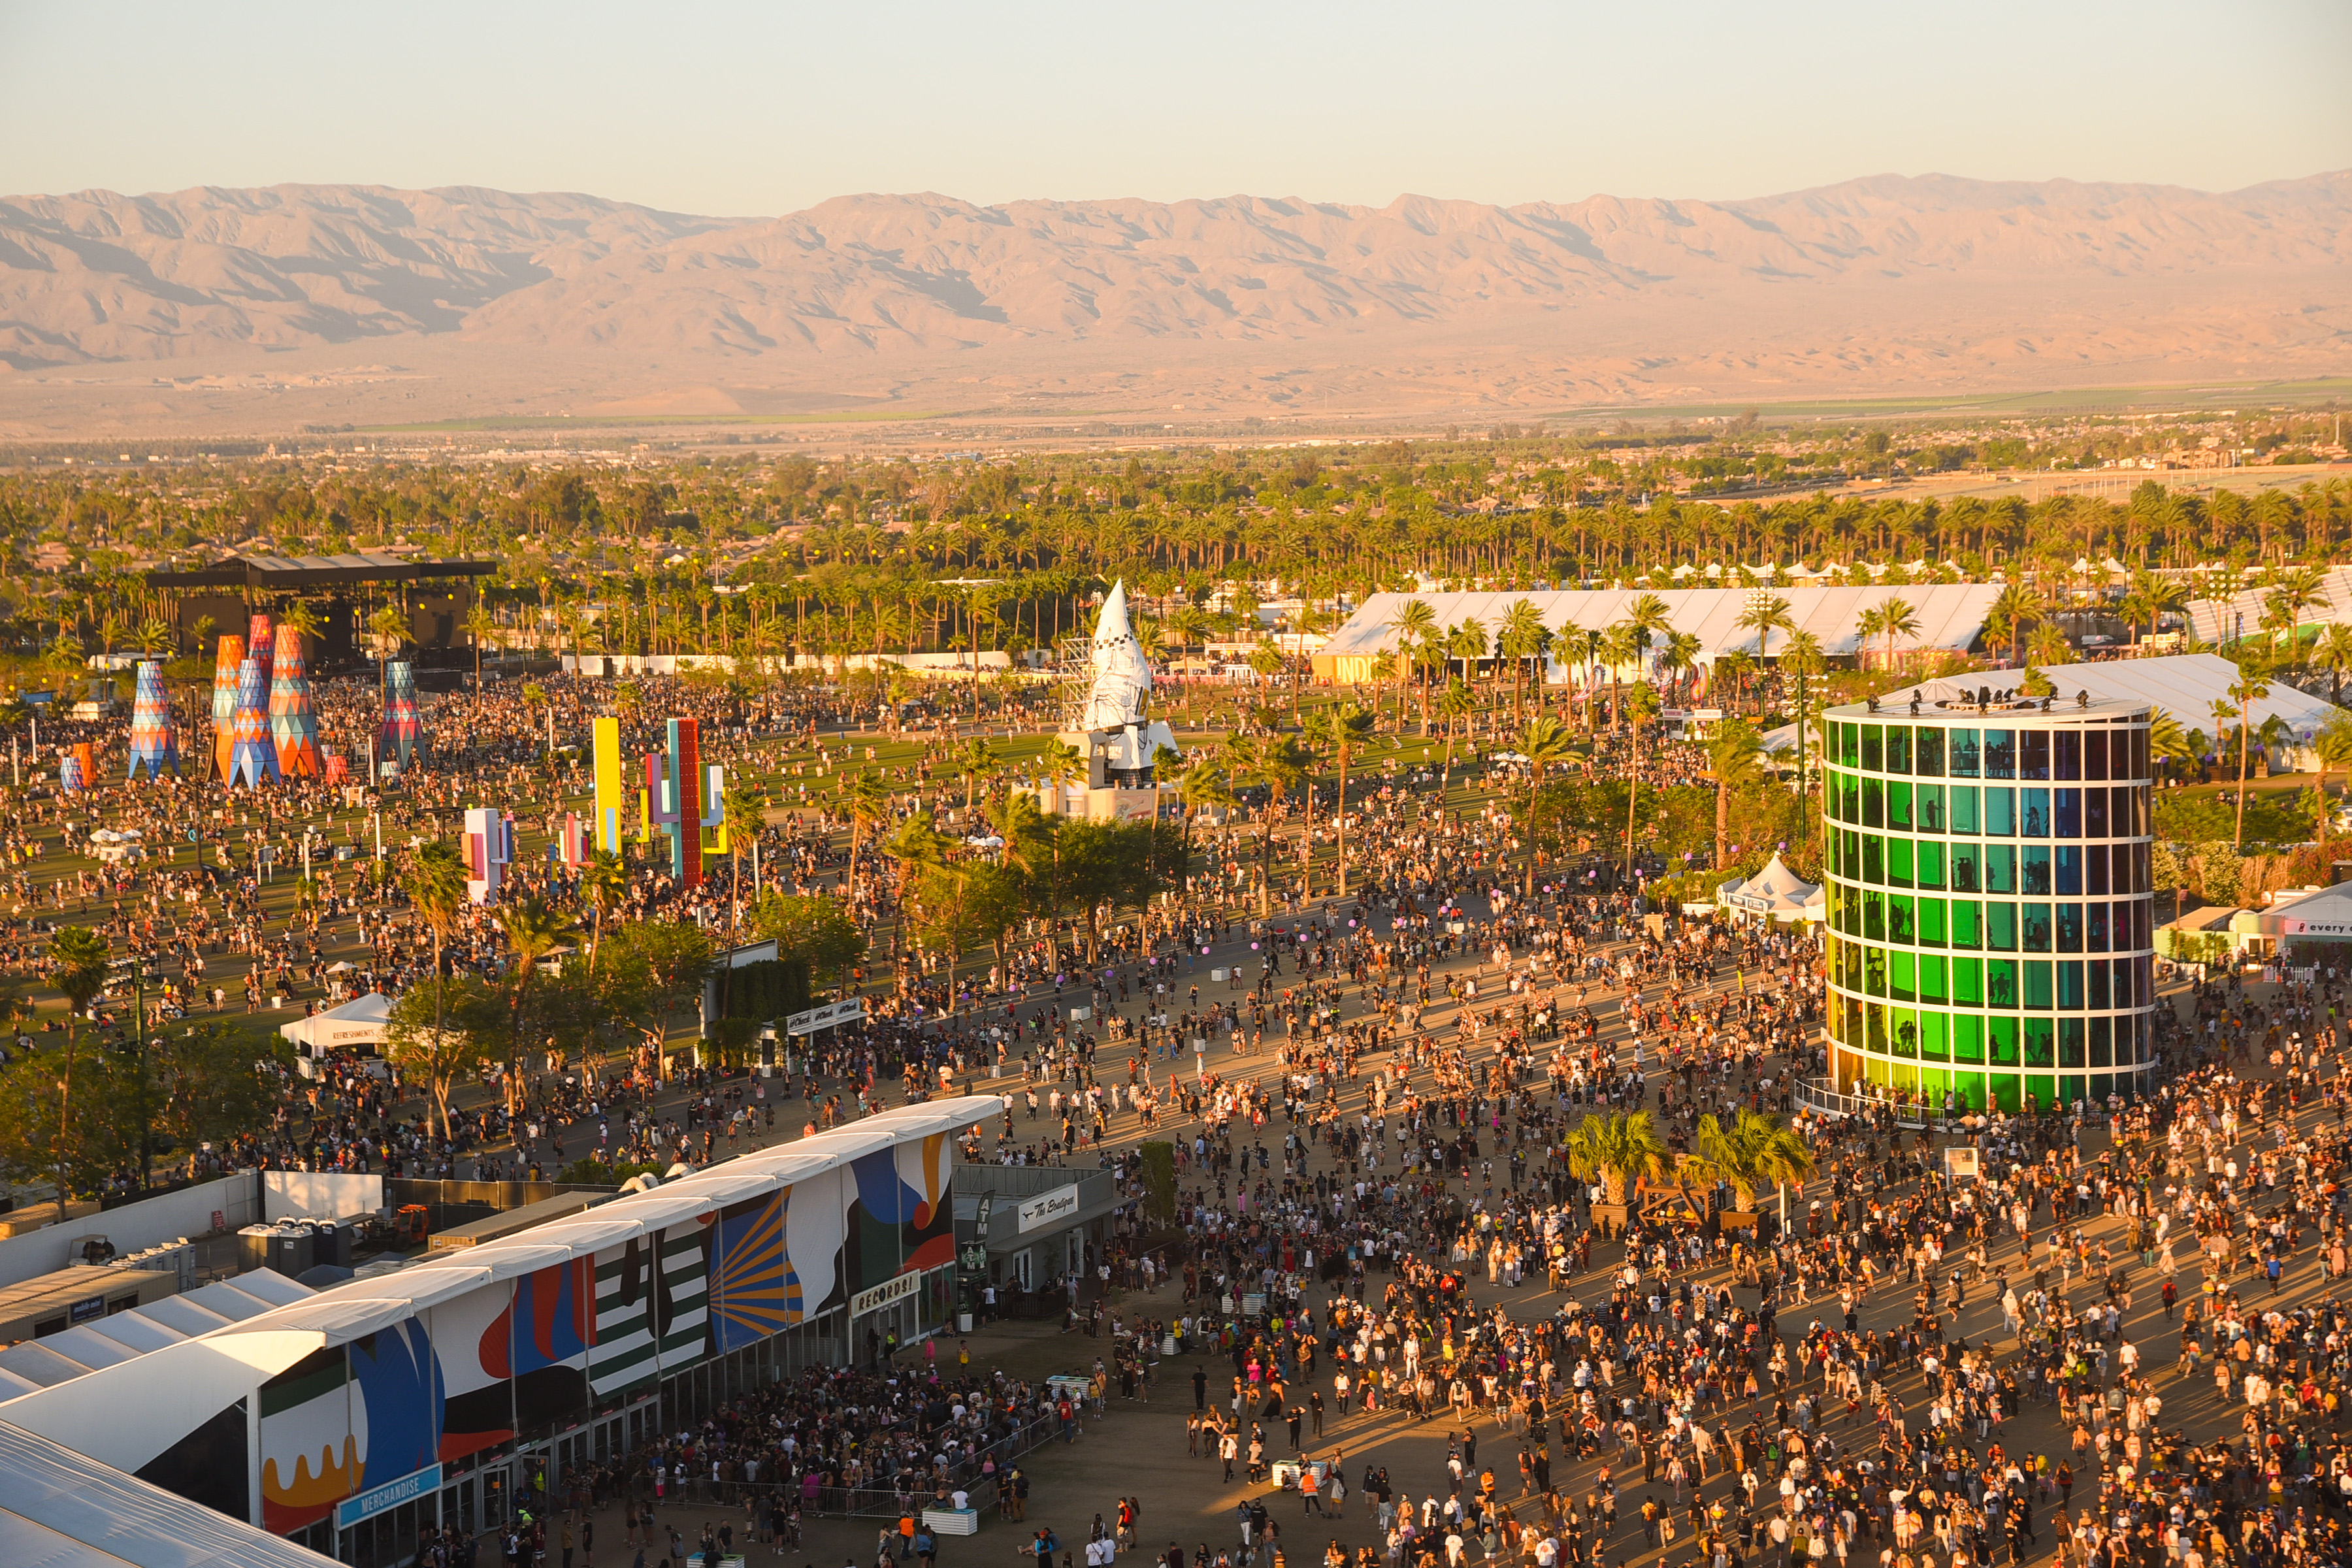 Festival goers attend Coachella on April 21, 2019 in Indio, California.